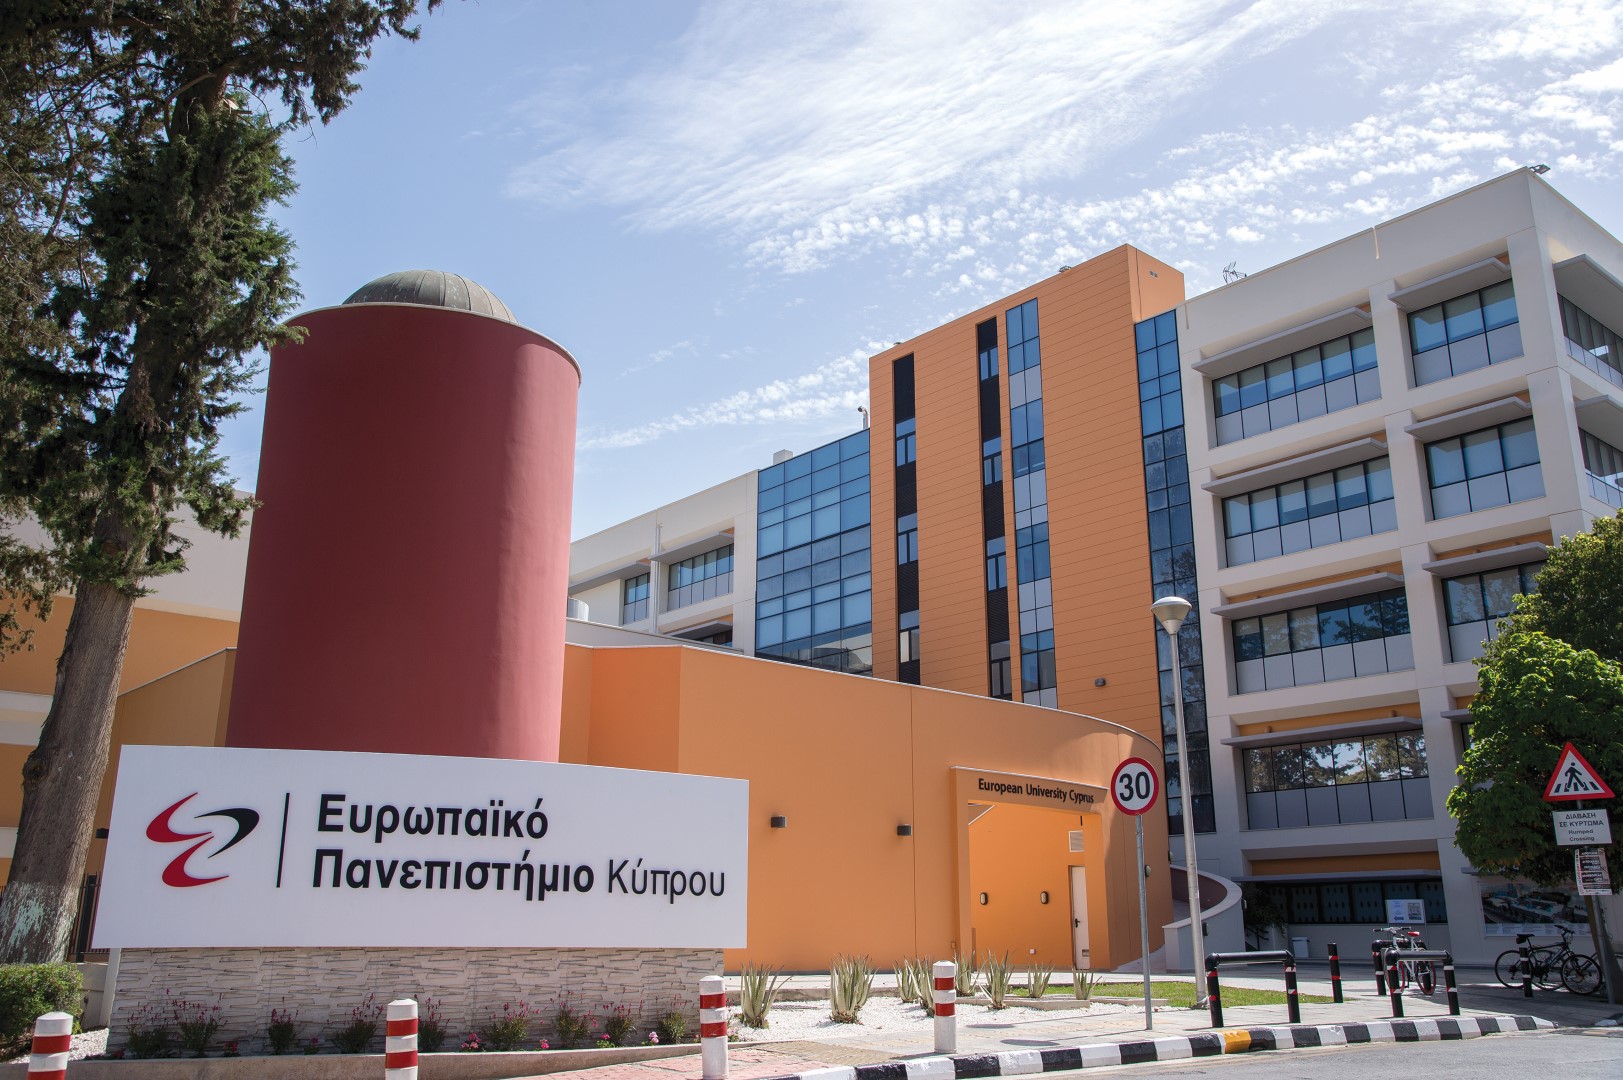 Συναυλία Συμφωνικής Μπάντας Δήμου Στροβόλου – Ευρωπαϊκού Πανεπιστημίου Κύπρου